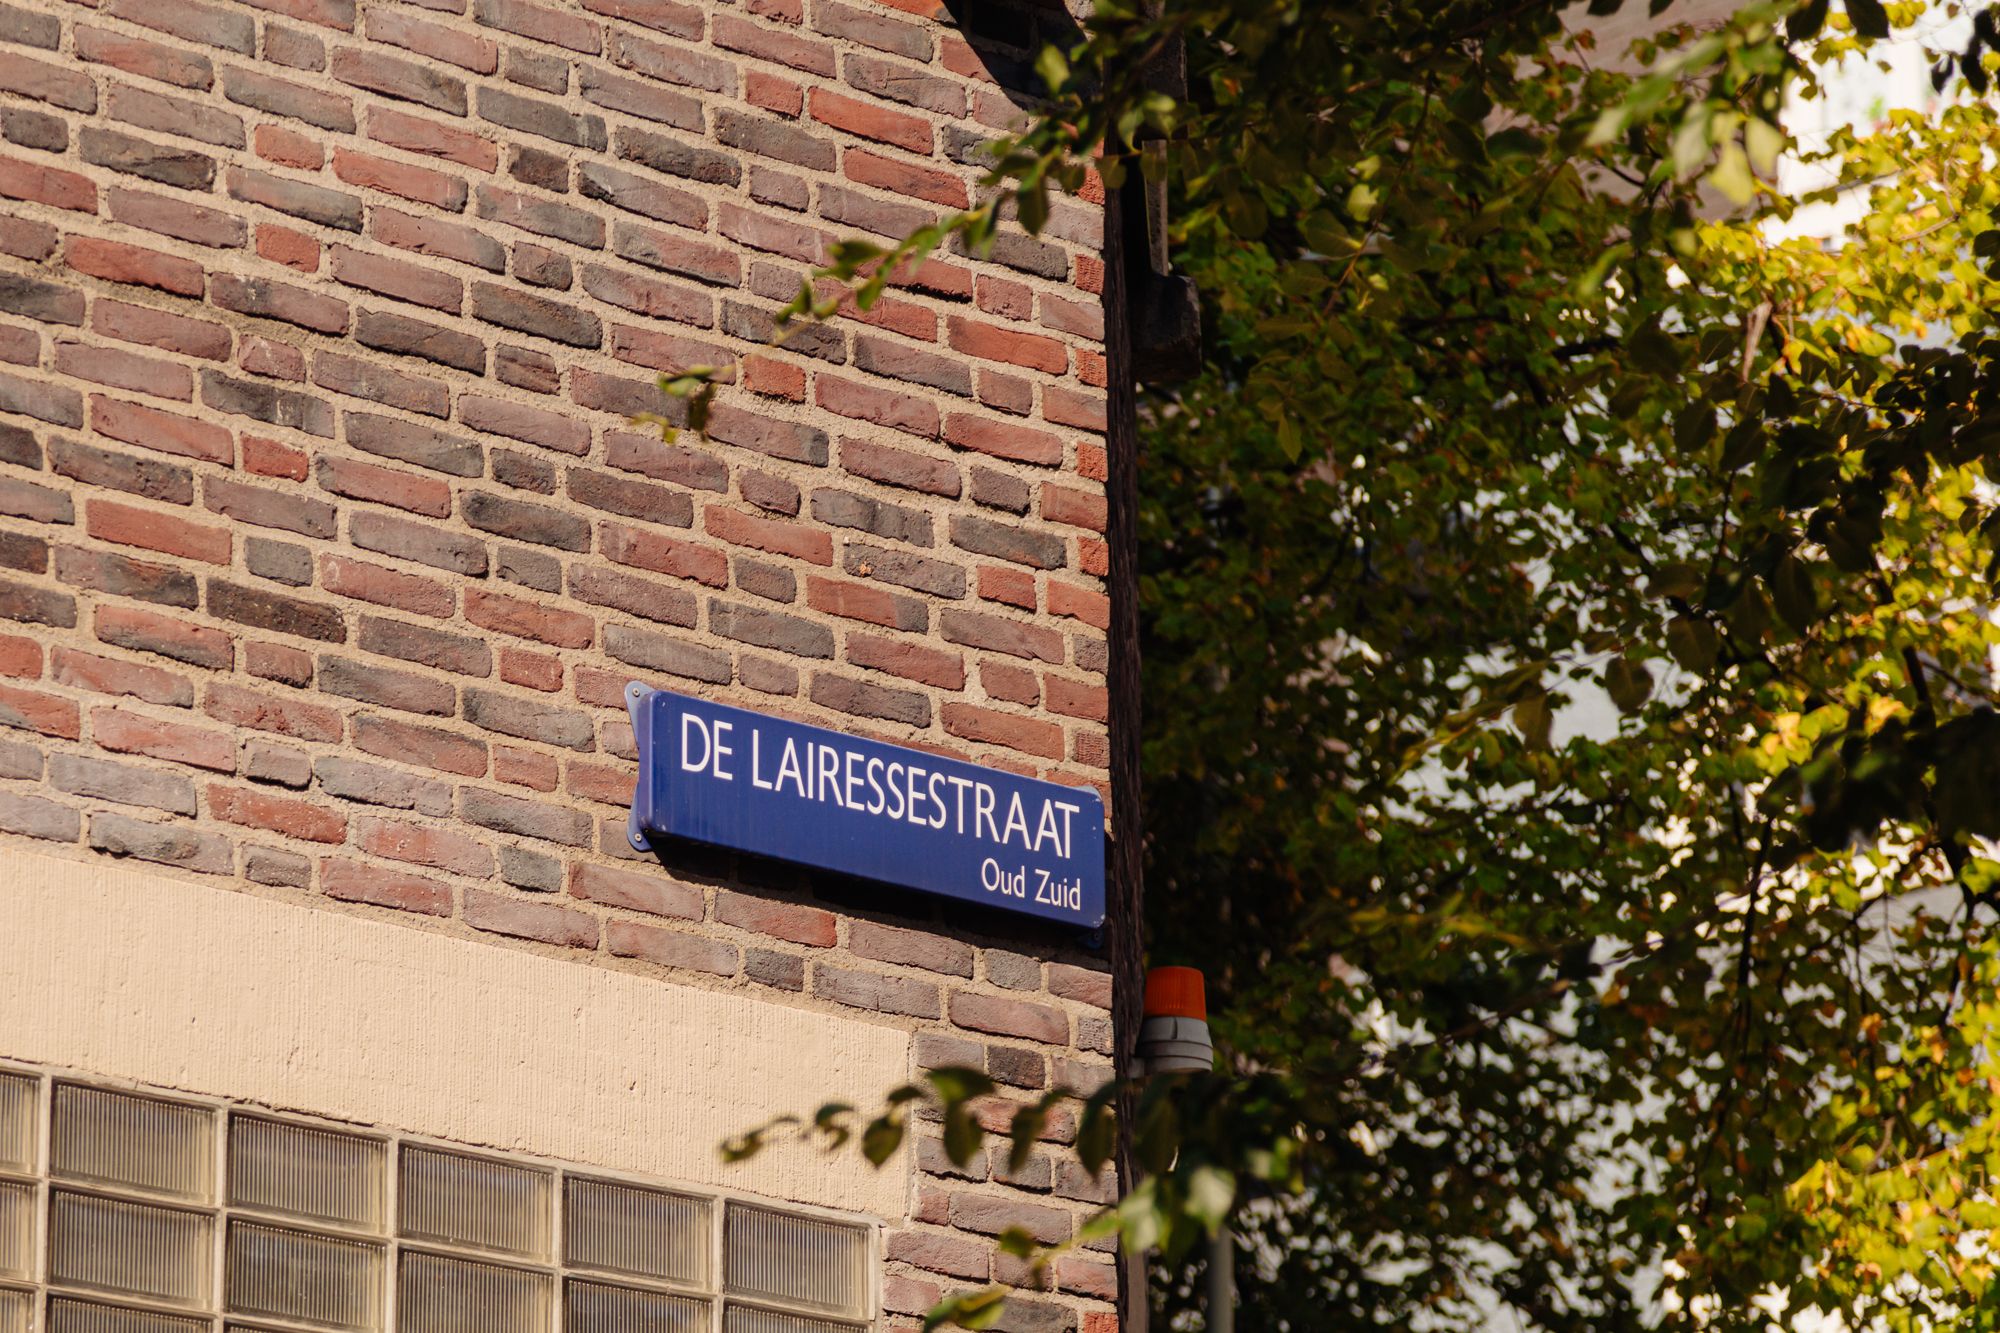 De Lairessestraat 176 B - Amsterdam